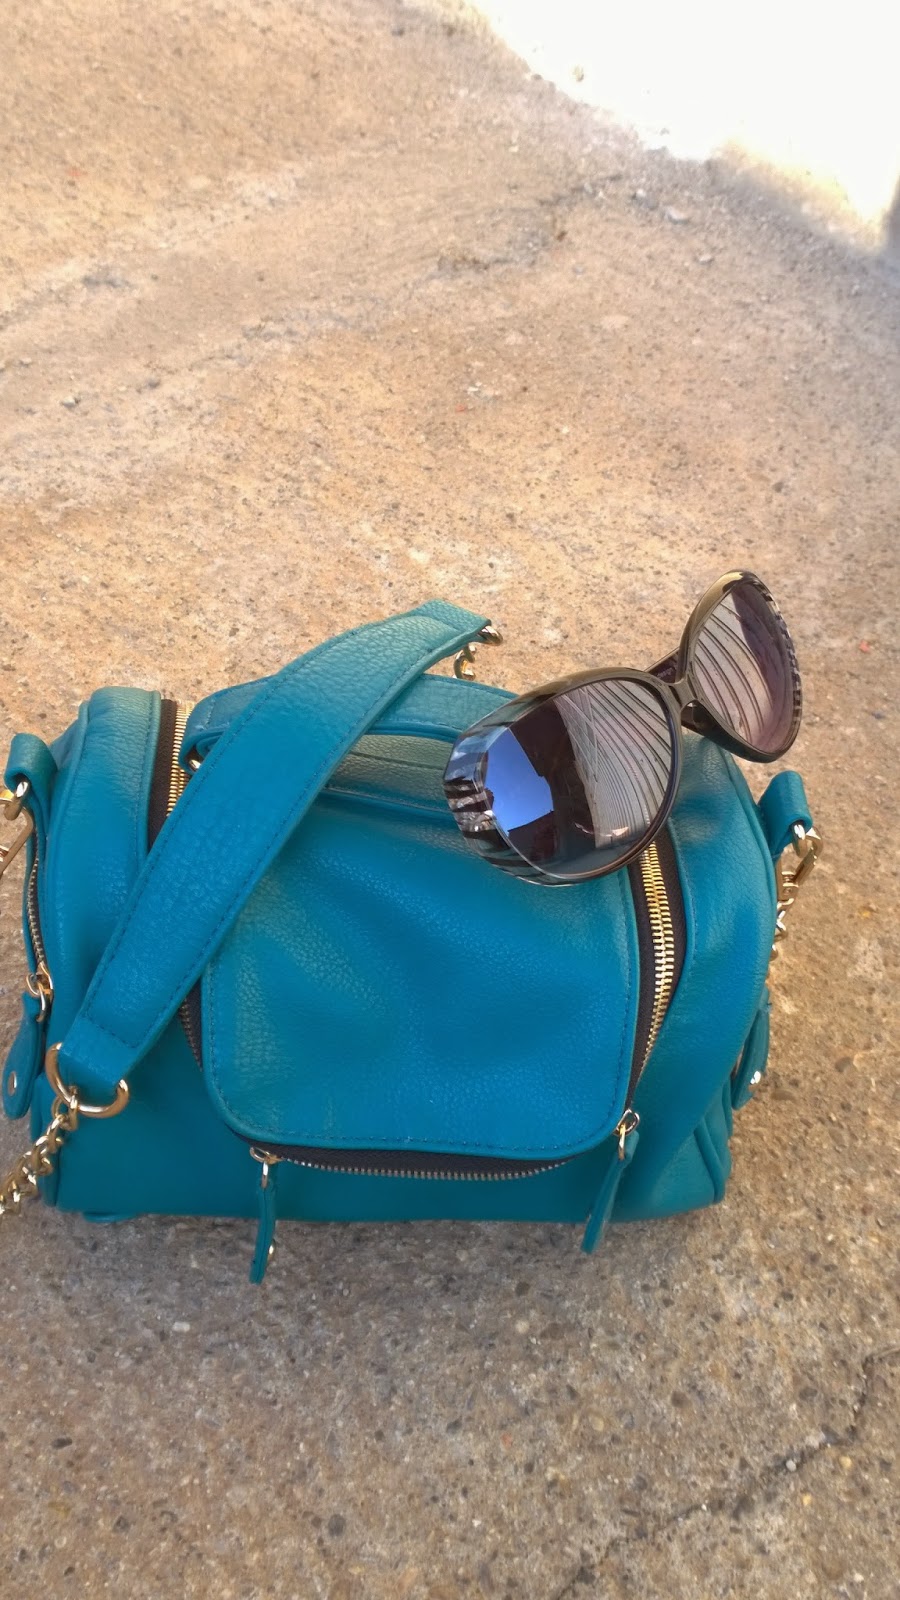 Funky handbag and animal print sunglasses